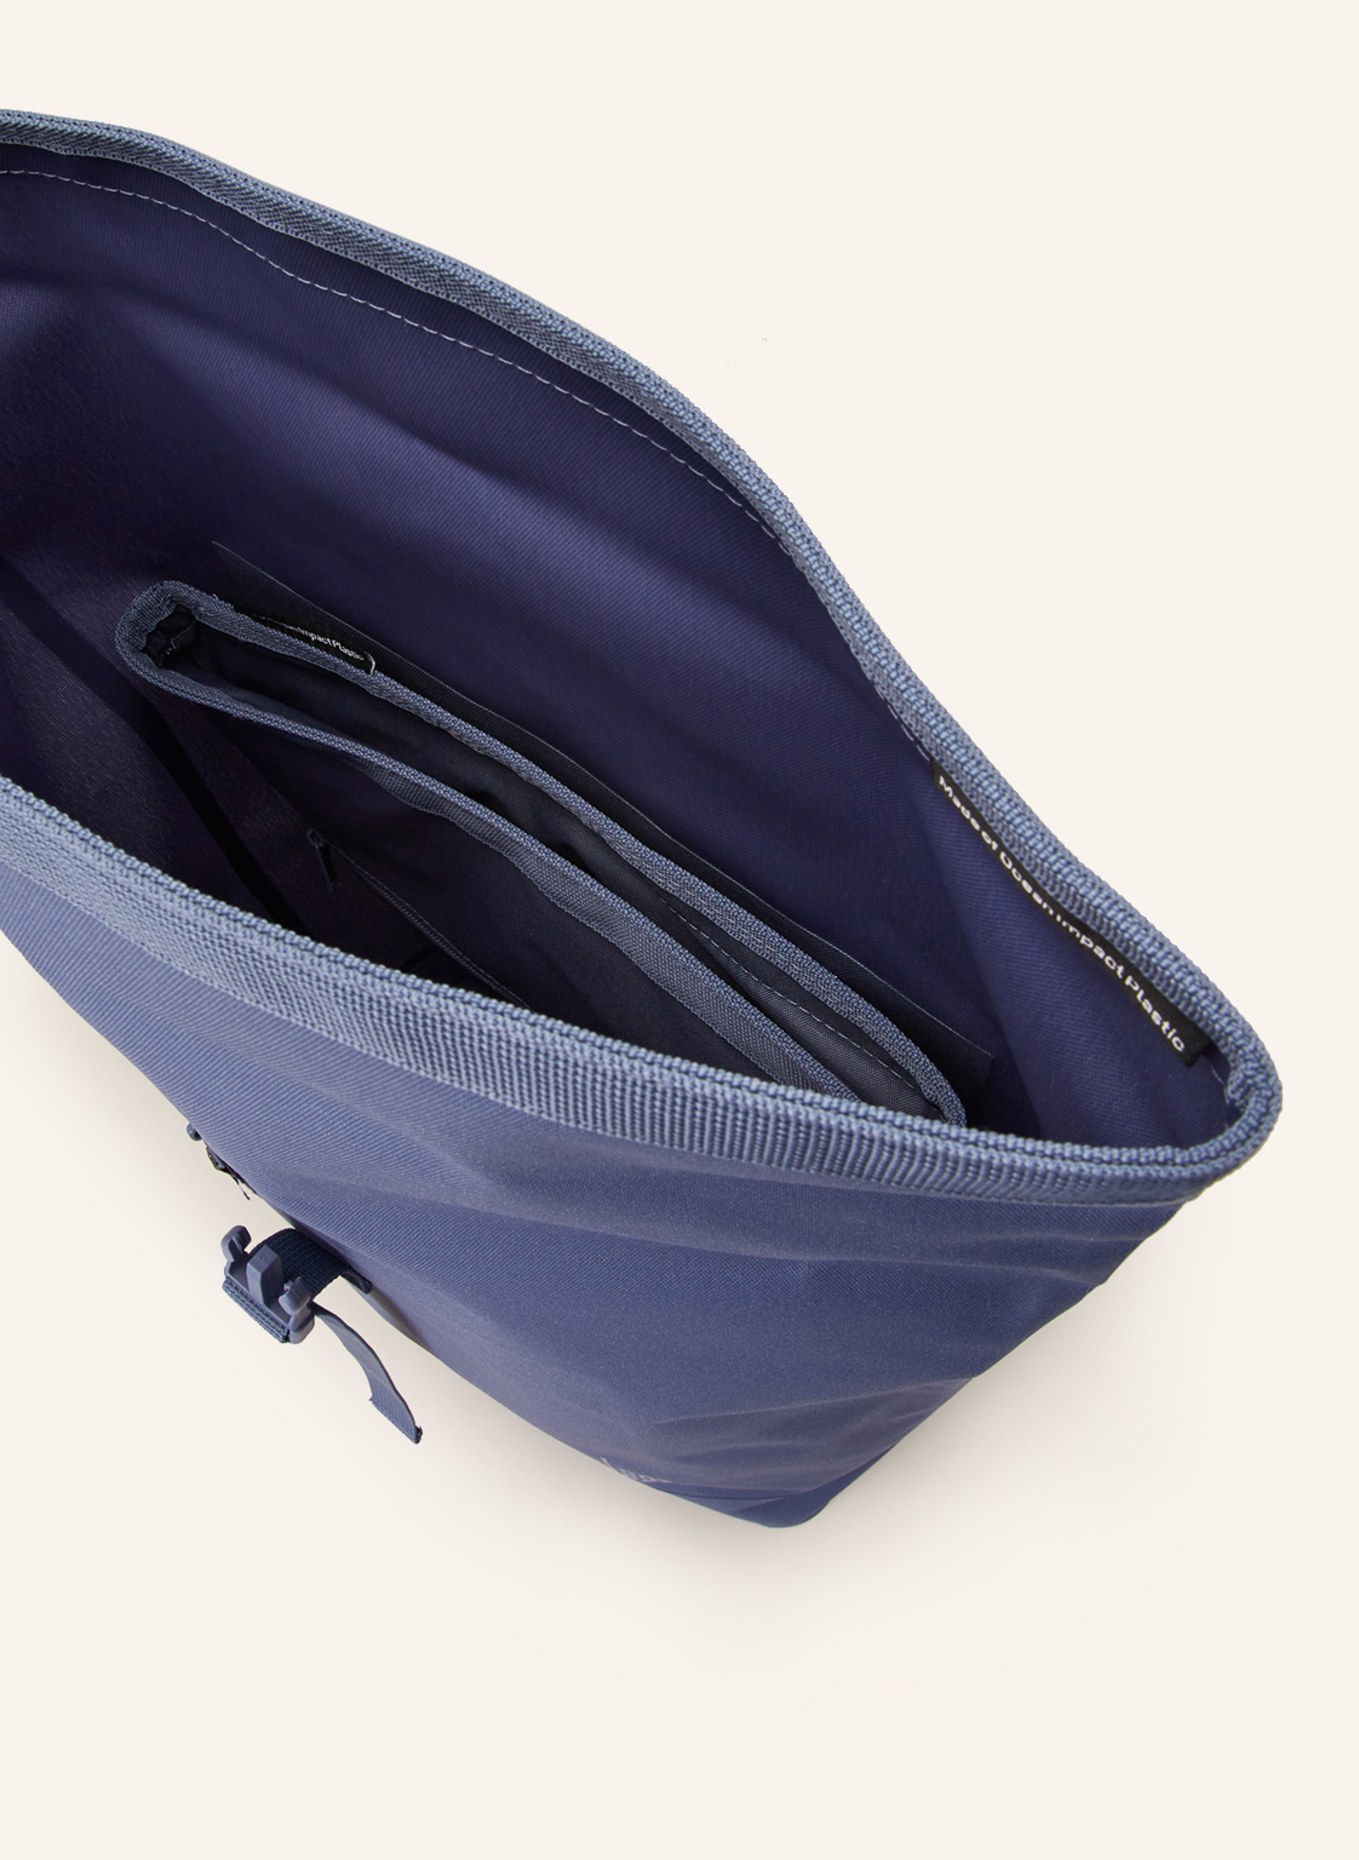 GOT BAG Rucksack 26 l mit Laptop-Fach, Farbe: BLAU (Bild 3)